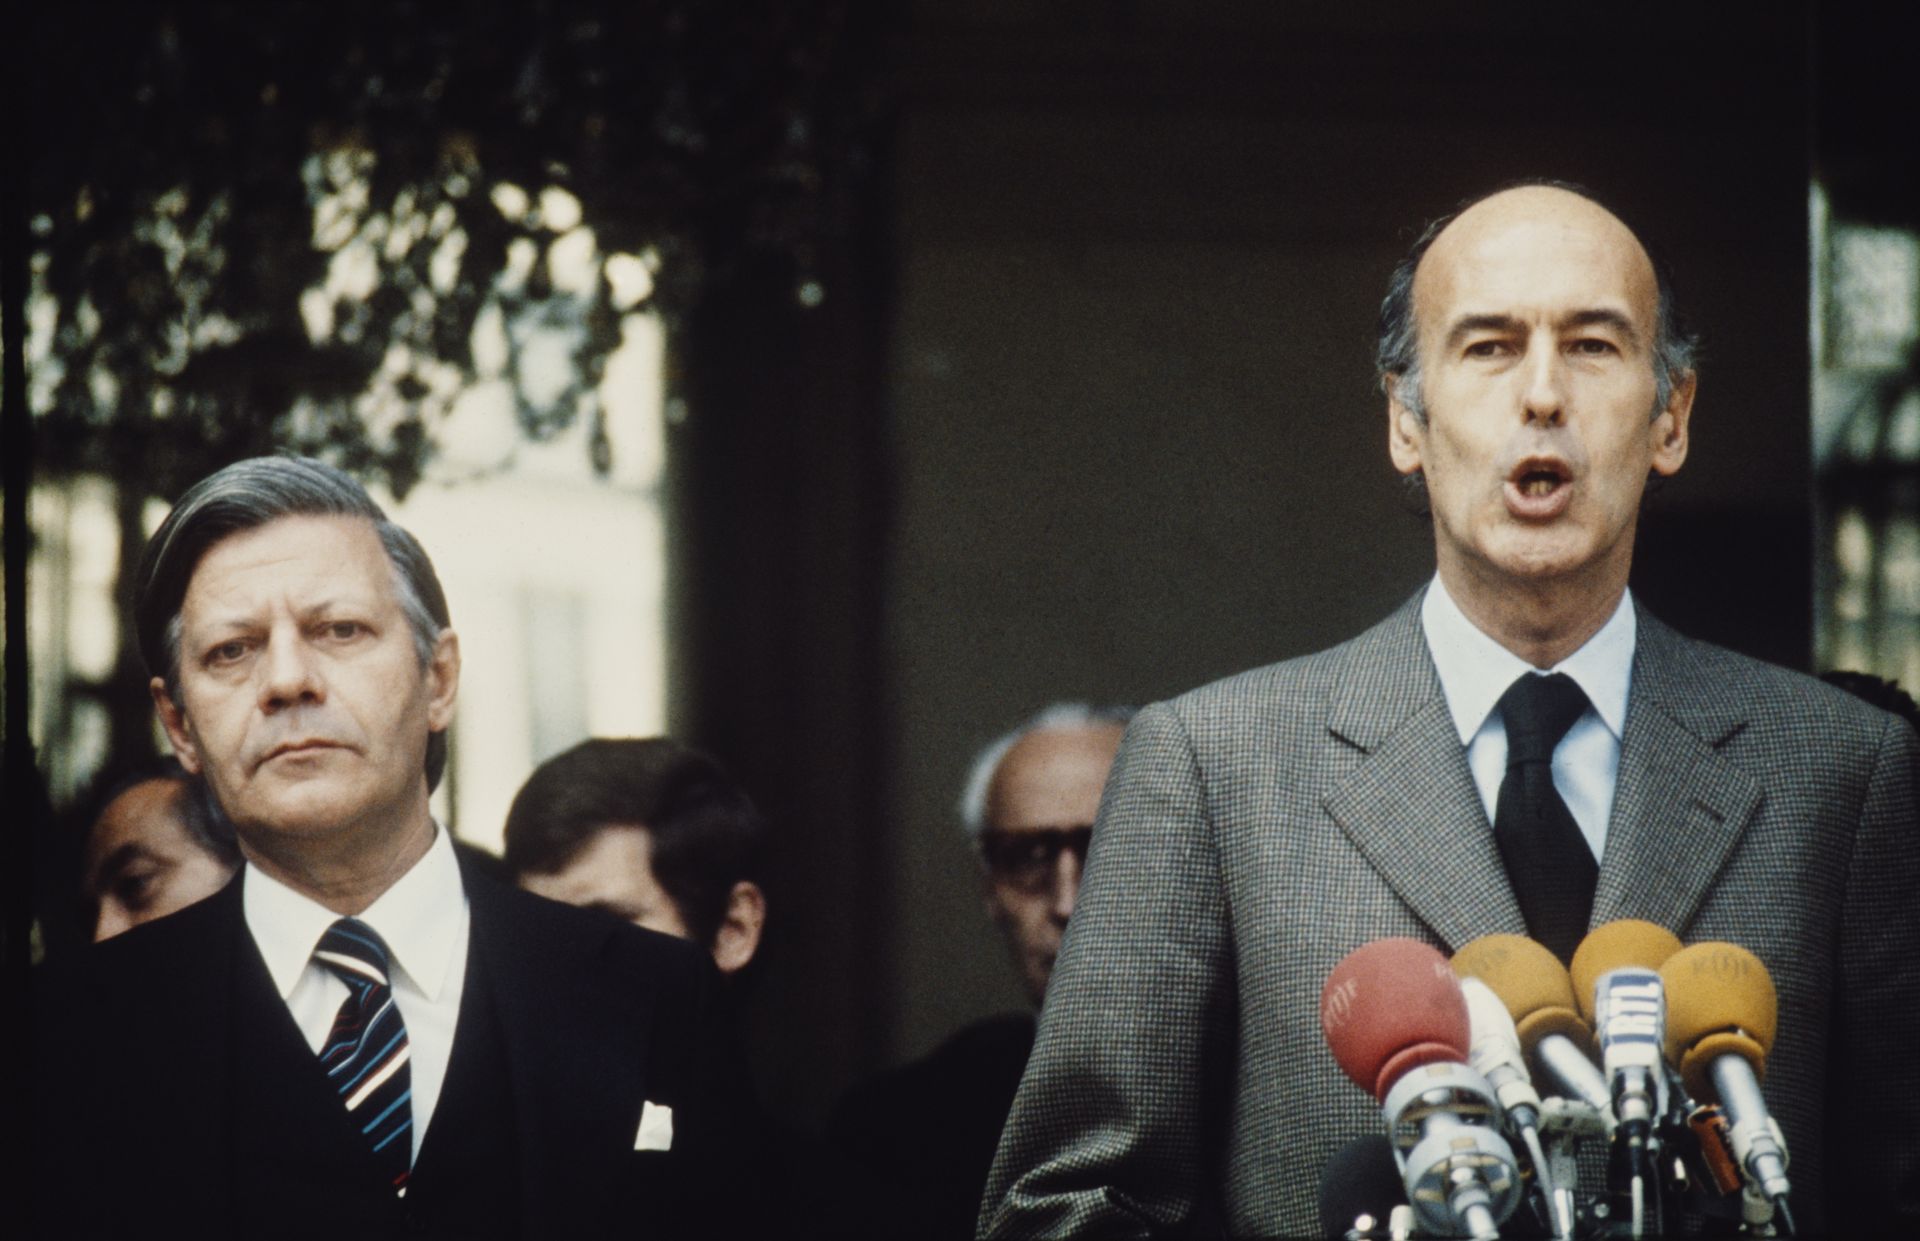  Валери Жискар д'Естен като президент на Франция с немския канцлер Хелмут Шмит (вляво) през 1974 година 